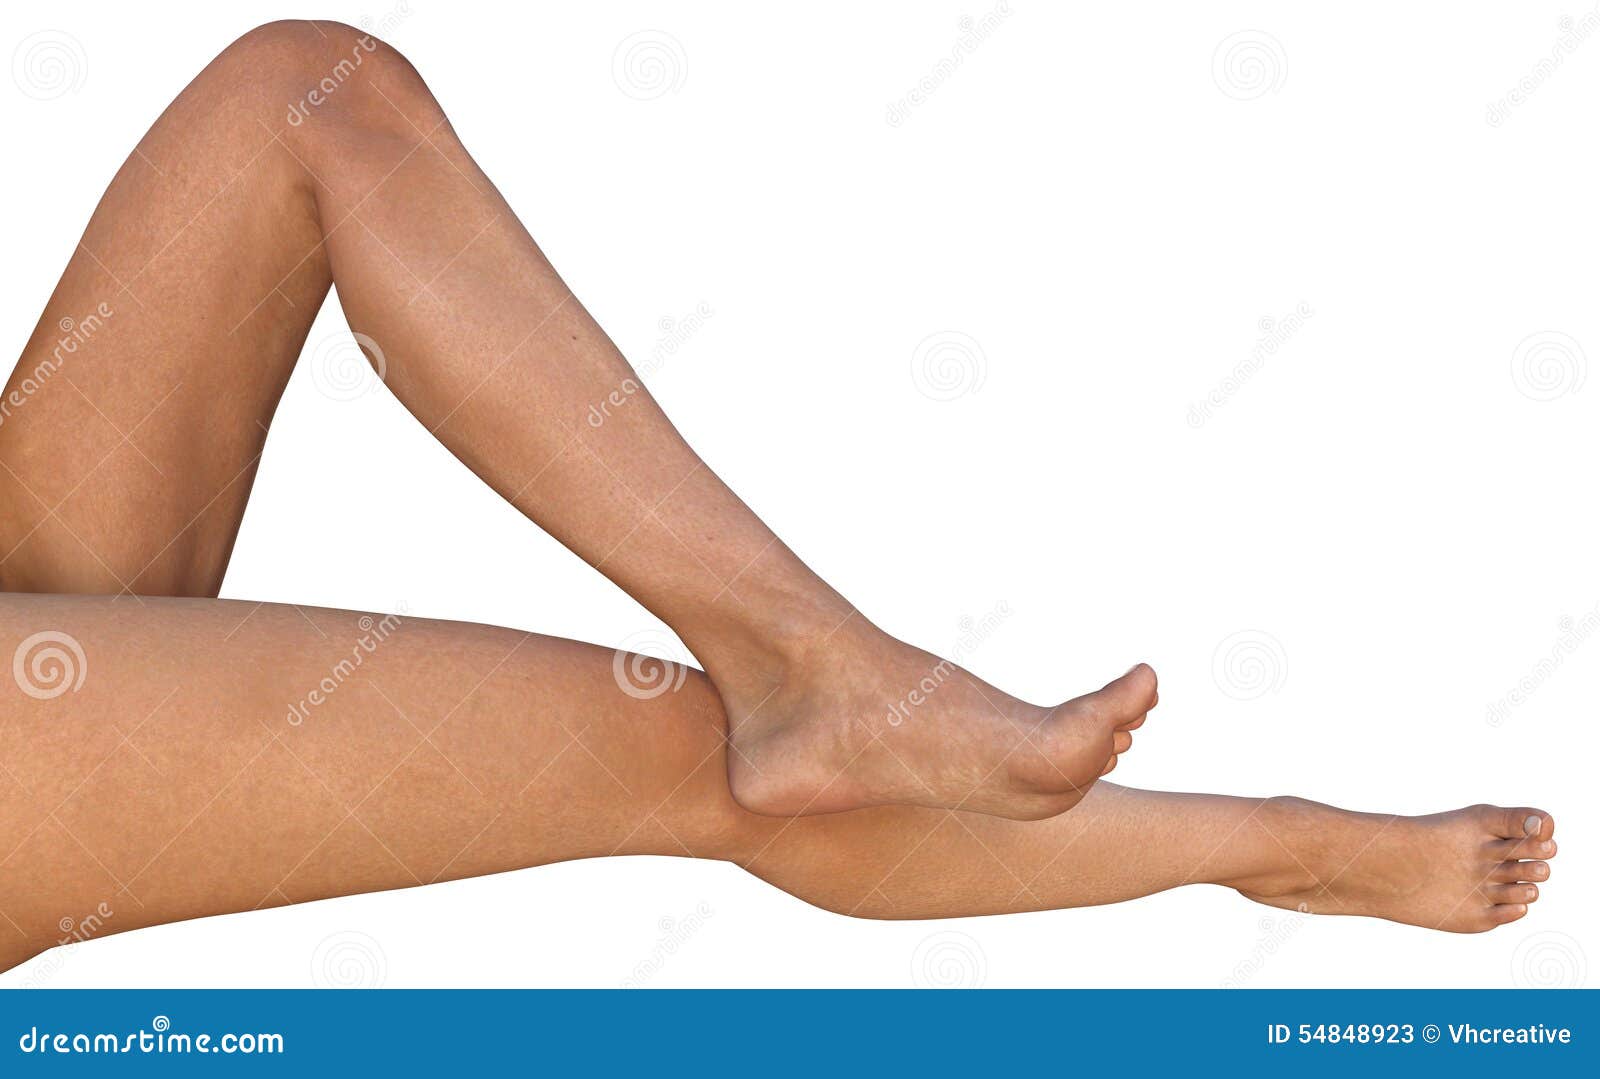 Согнутые женские ноги. Женская нога в согнутом виде. Согнутая женская ступня. Голую женщину ножки в коленях согнуты.